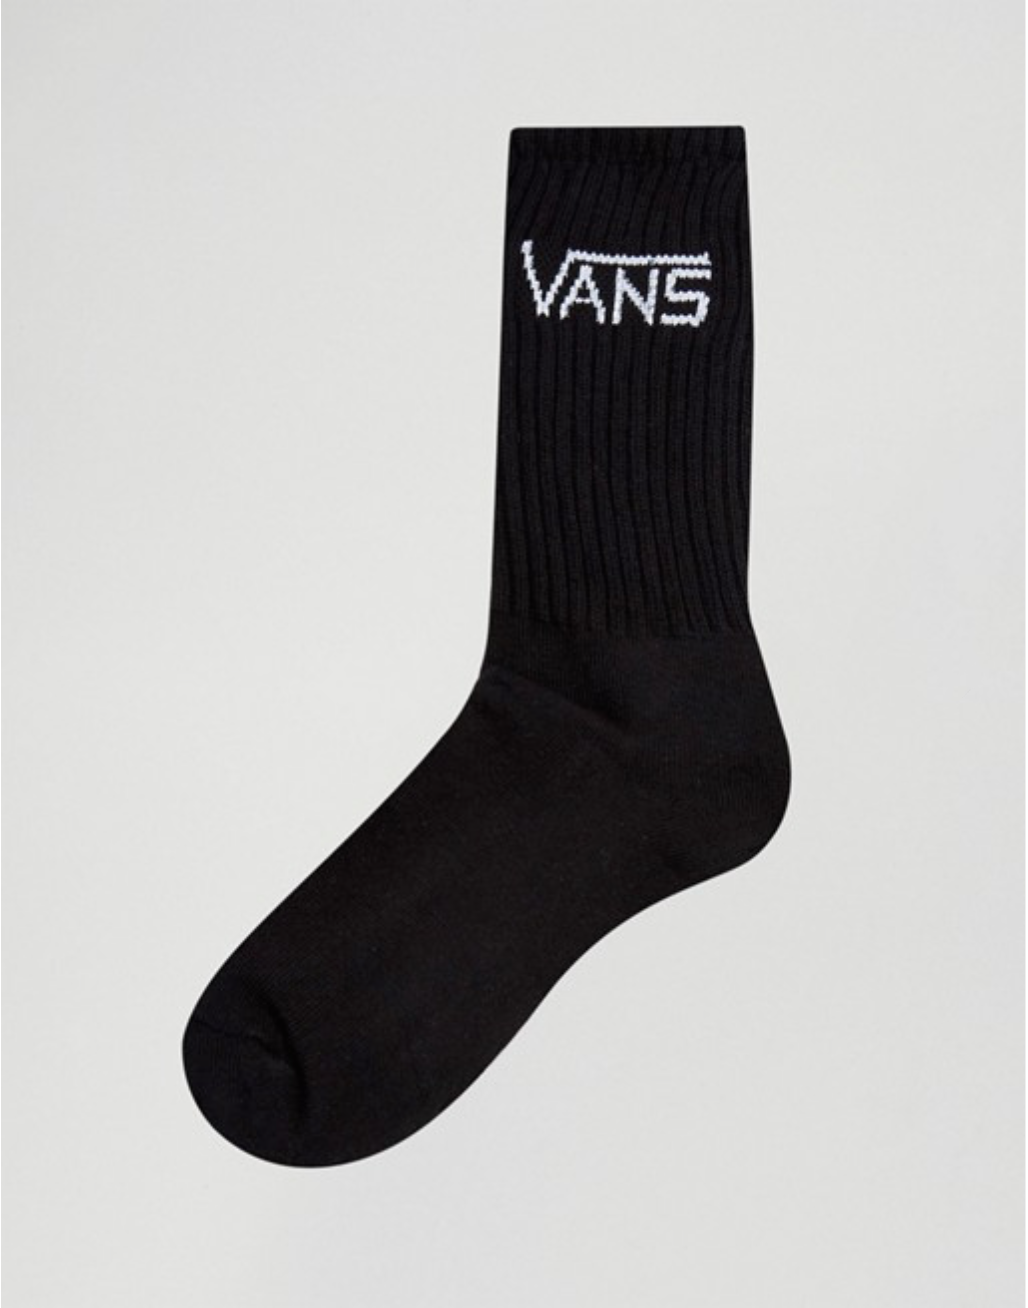 Vans classic crew black 3 pack socks | Branded black unisex sport socks